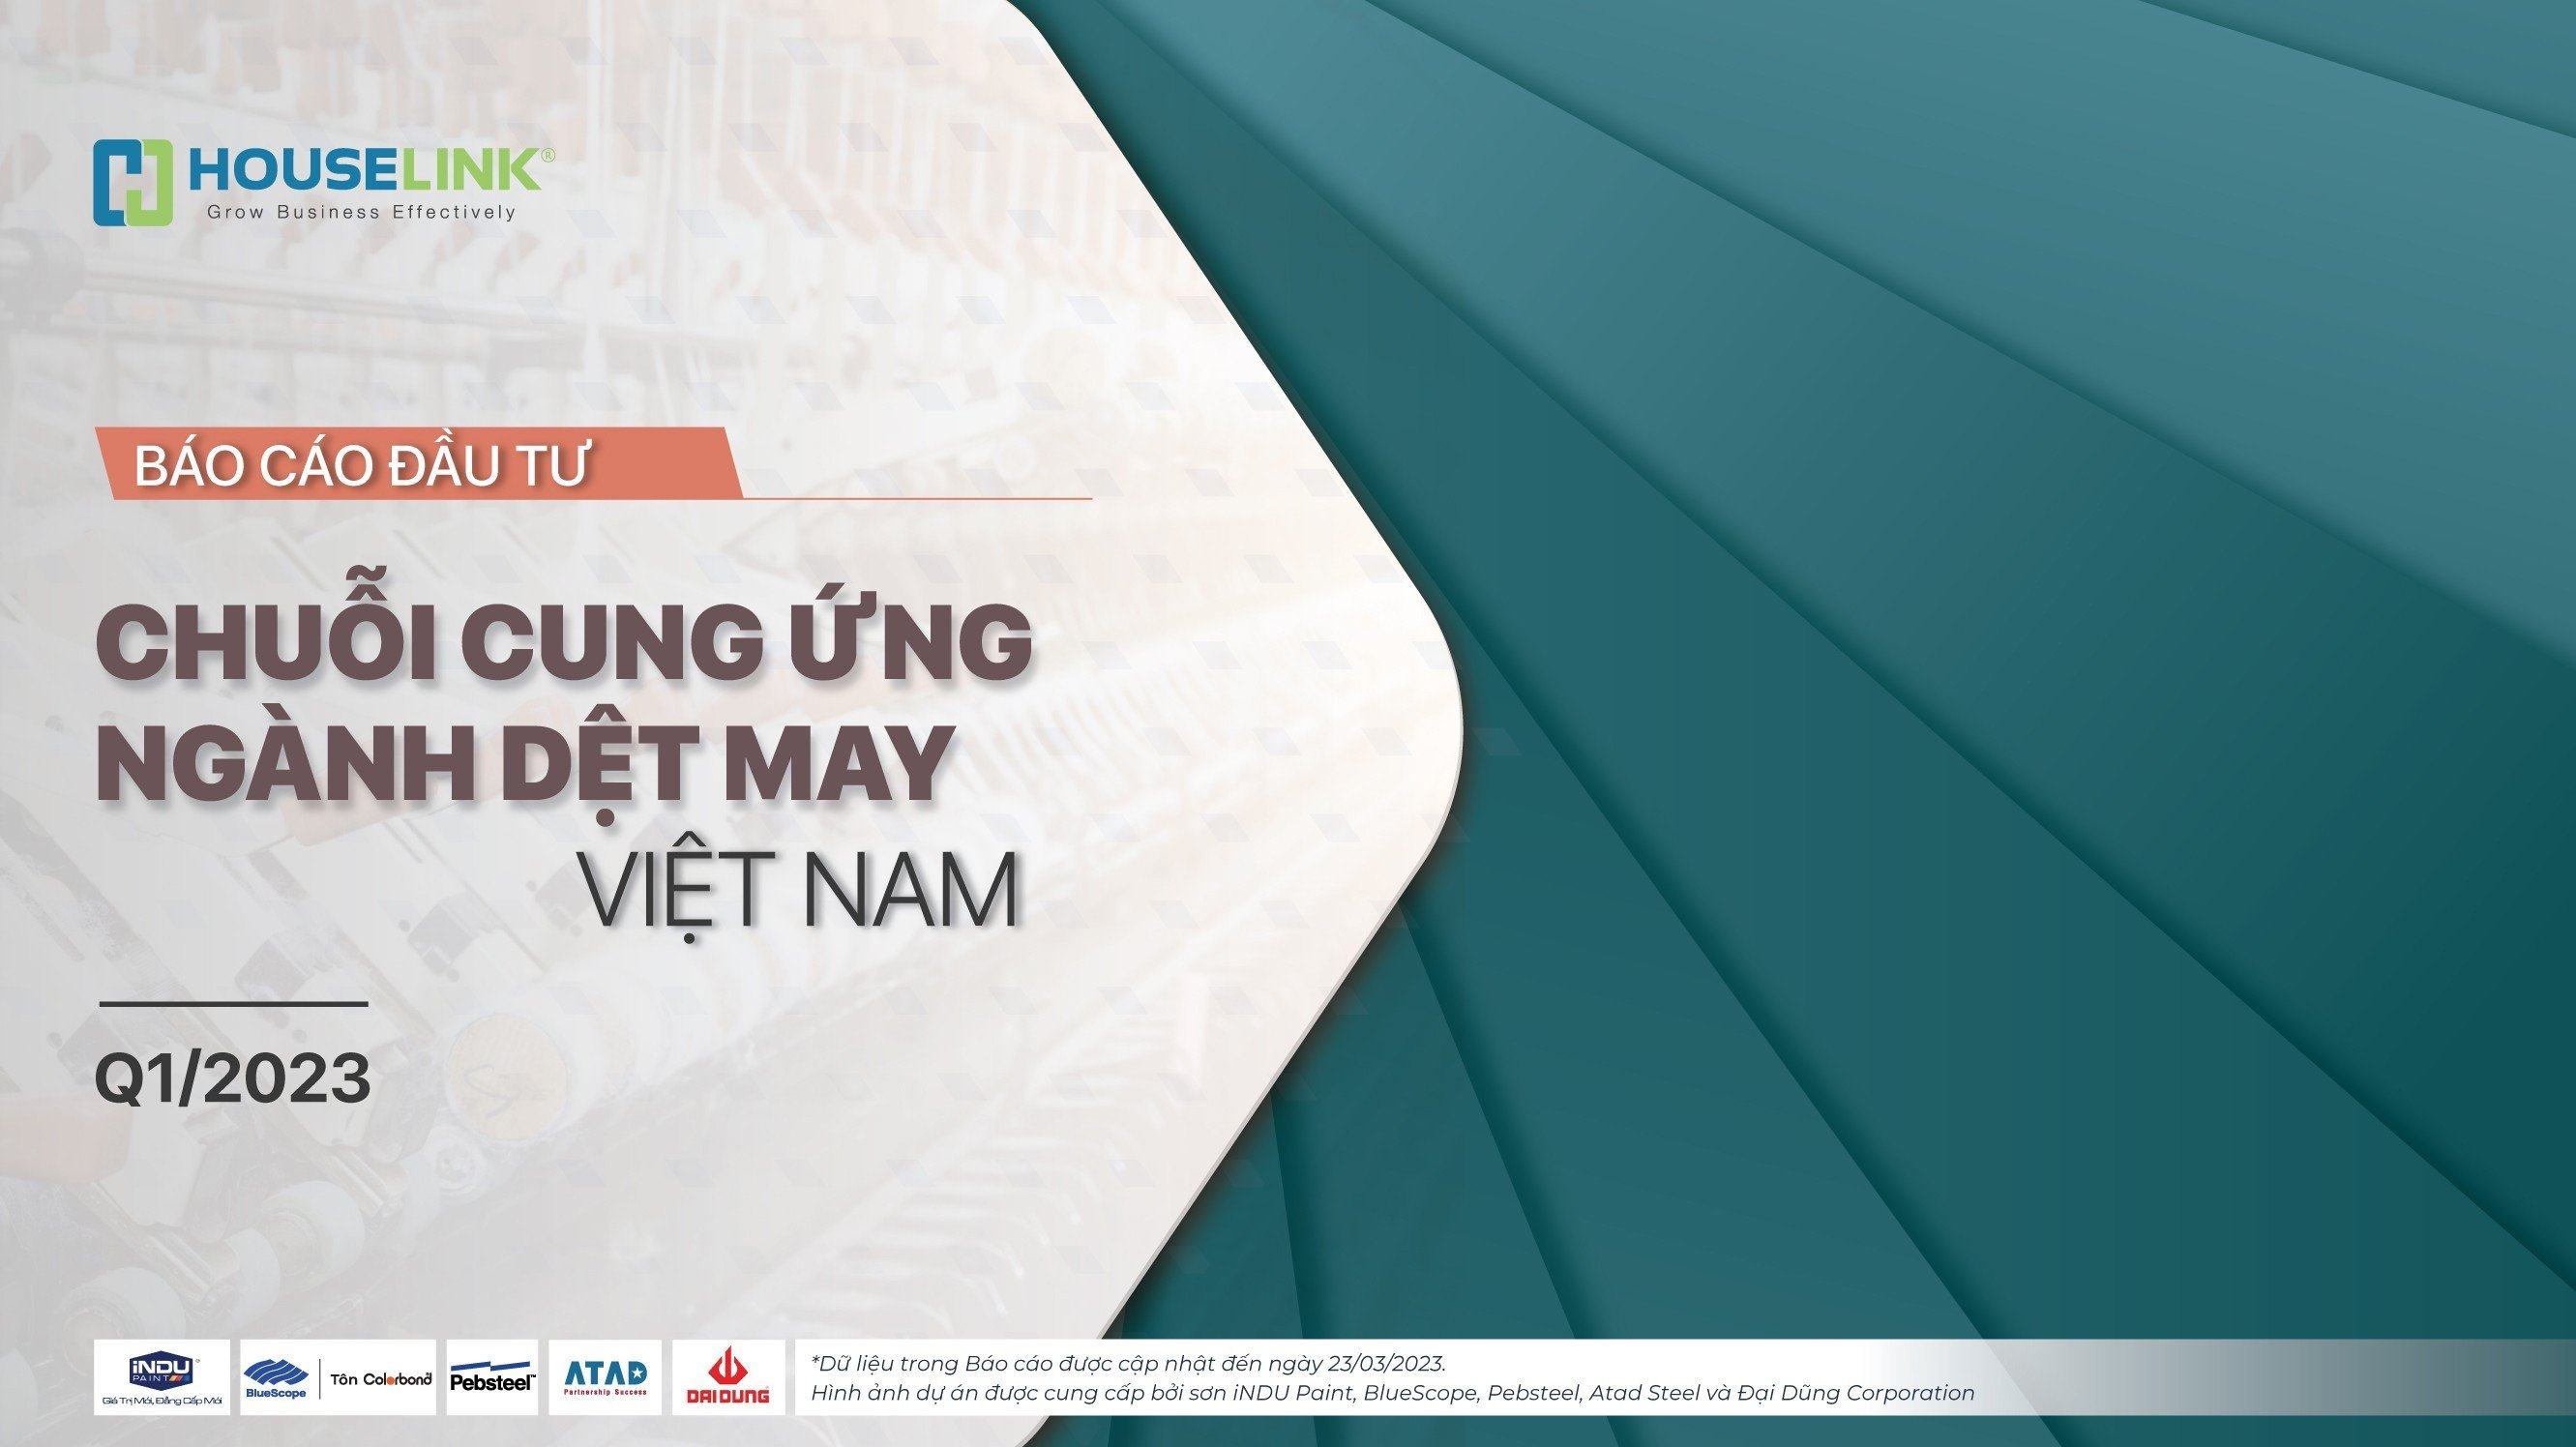 Báo cáo đầu tư chuỗi cung ứng ngành Dệt May Việt Nam Q1/2023